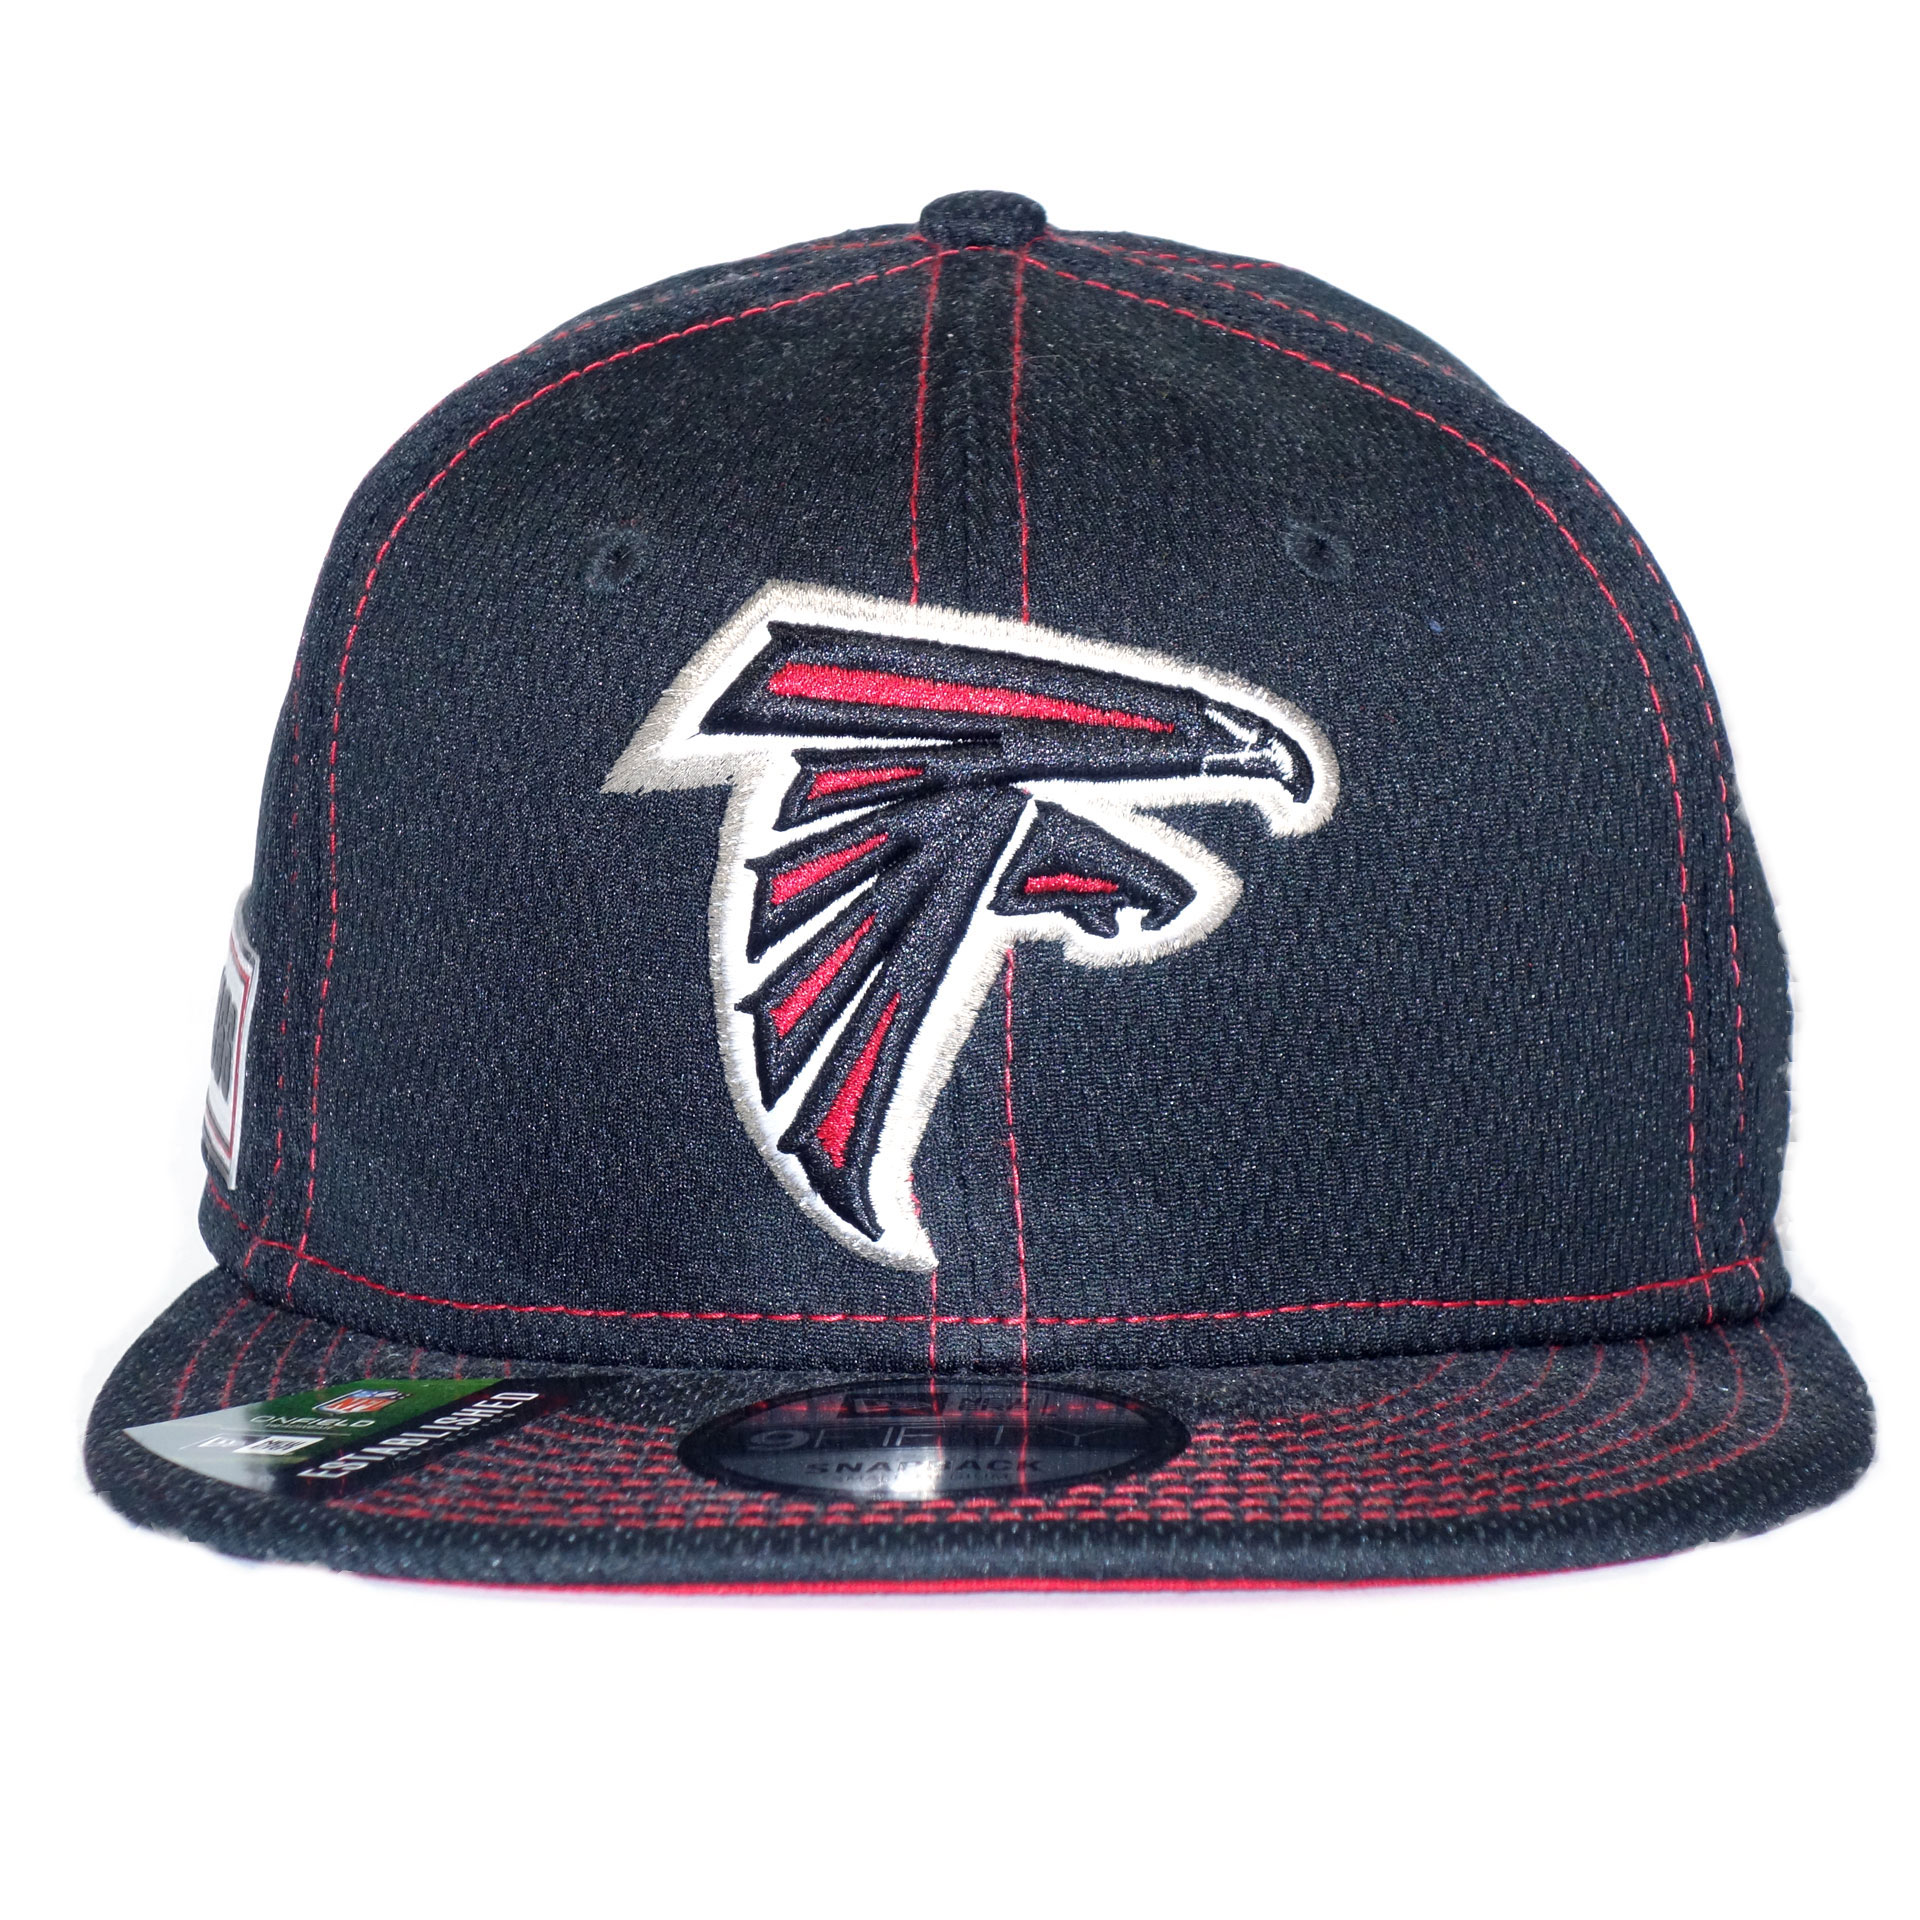 NFL New Era Cap Atlanta Falcons 9Fifty